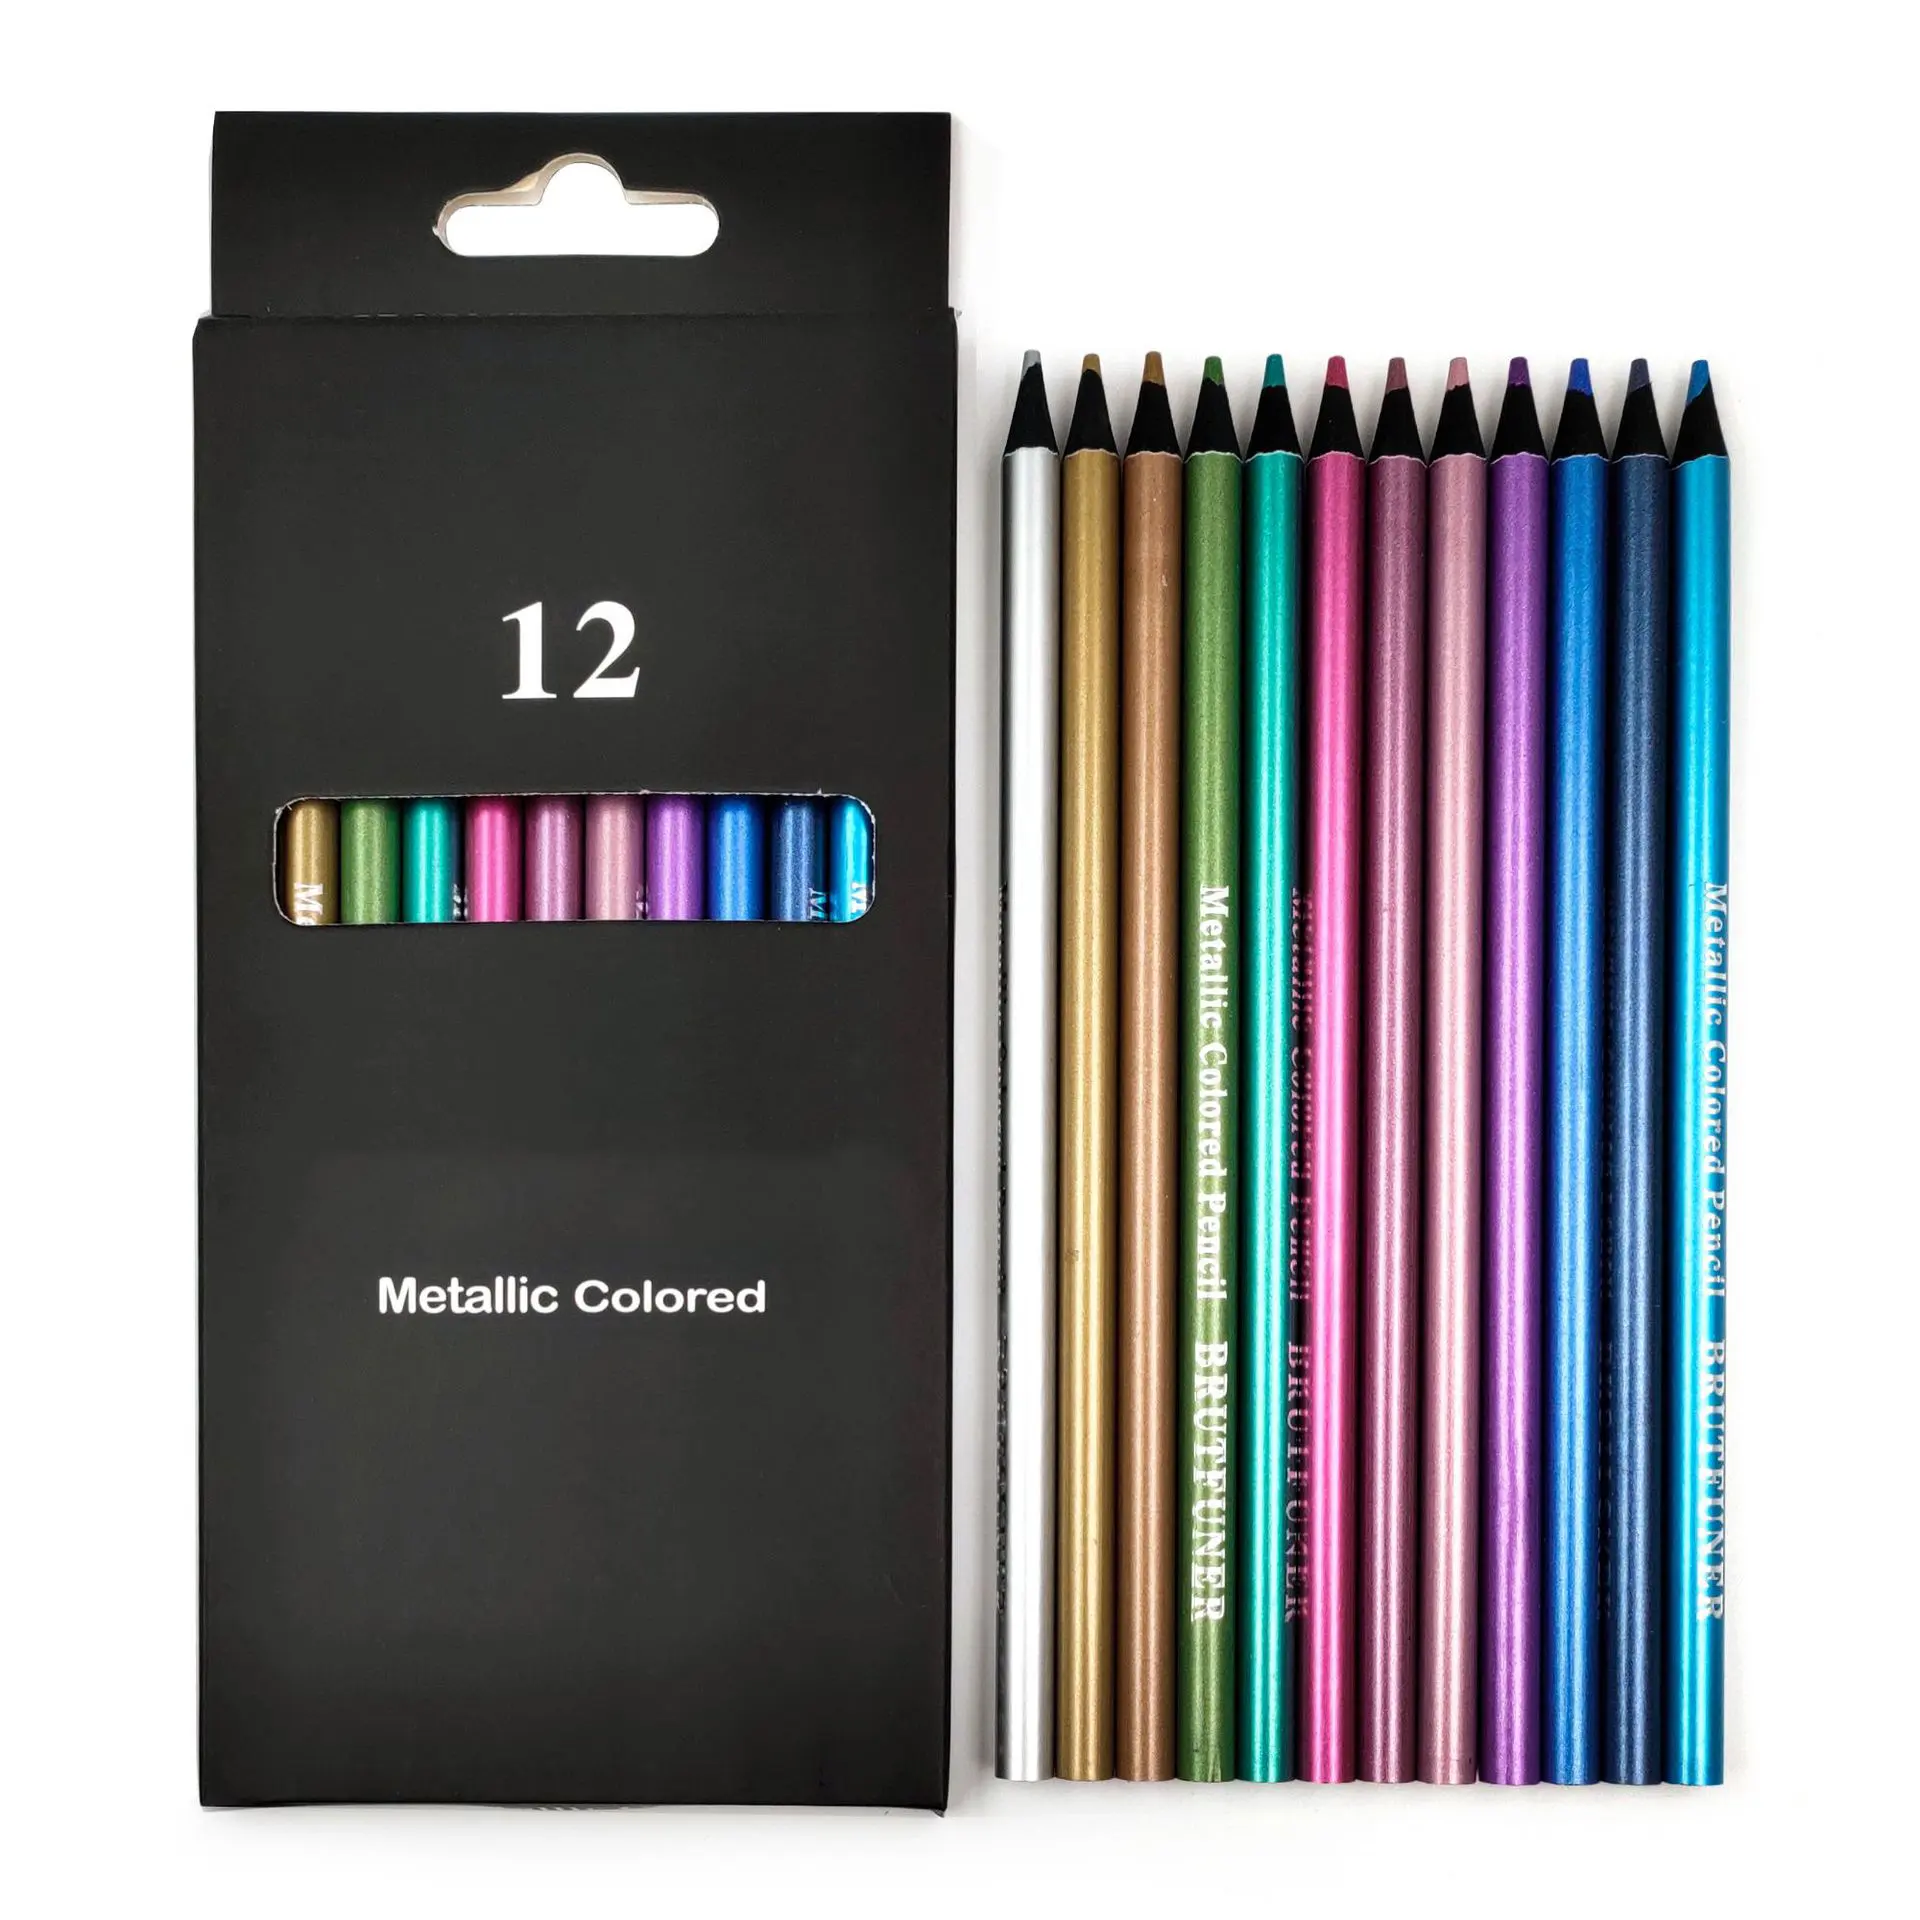 Özel 7 inç 12 renk kaliteli kalemler metalik kurşun kroki çizim kalem seti okul ve ofis için kutu ile